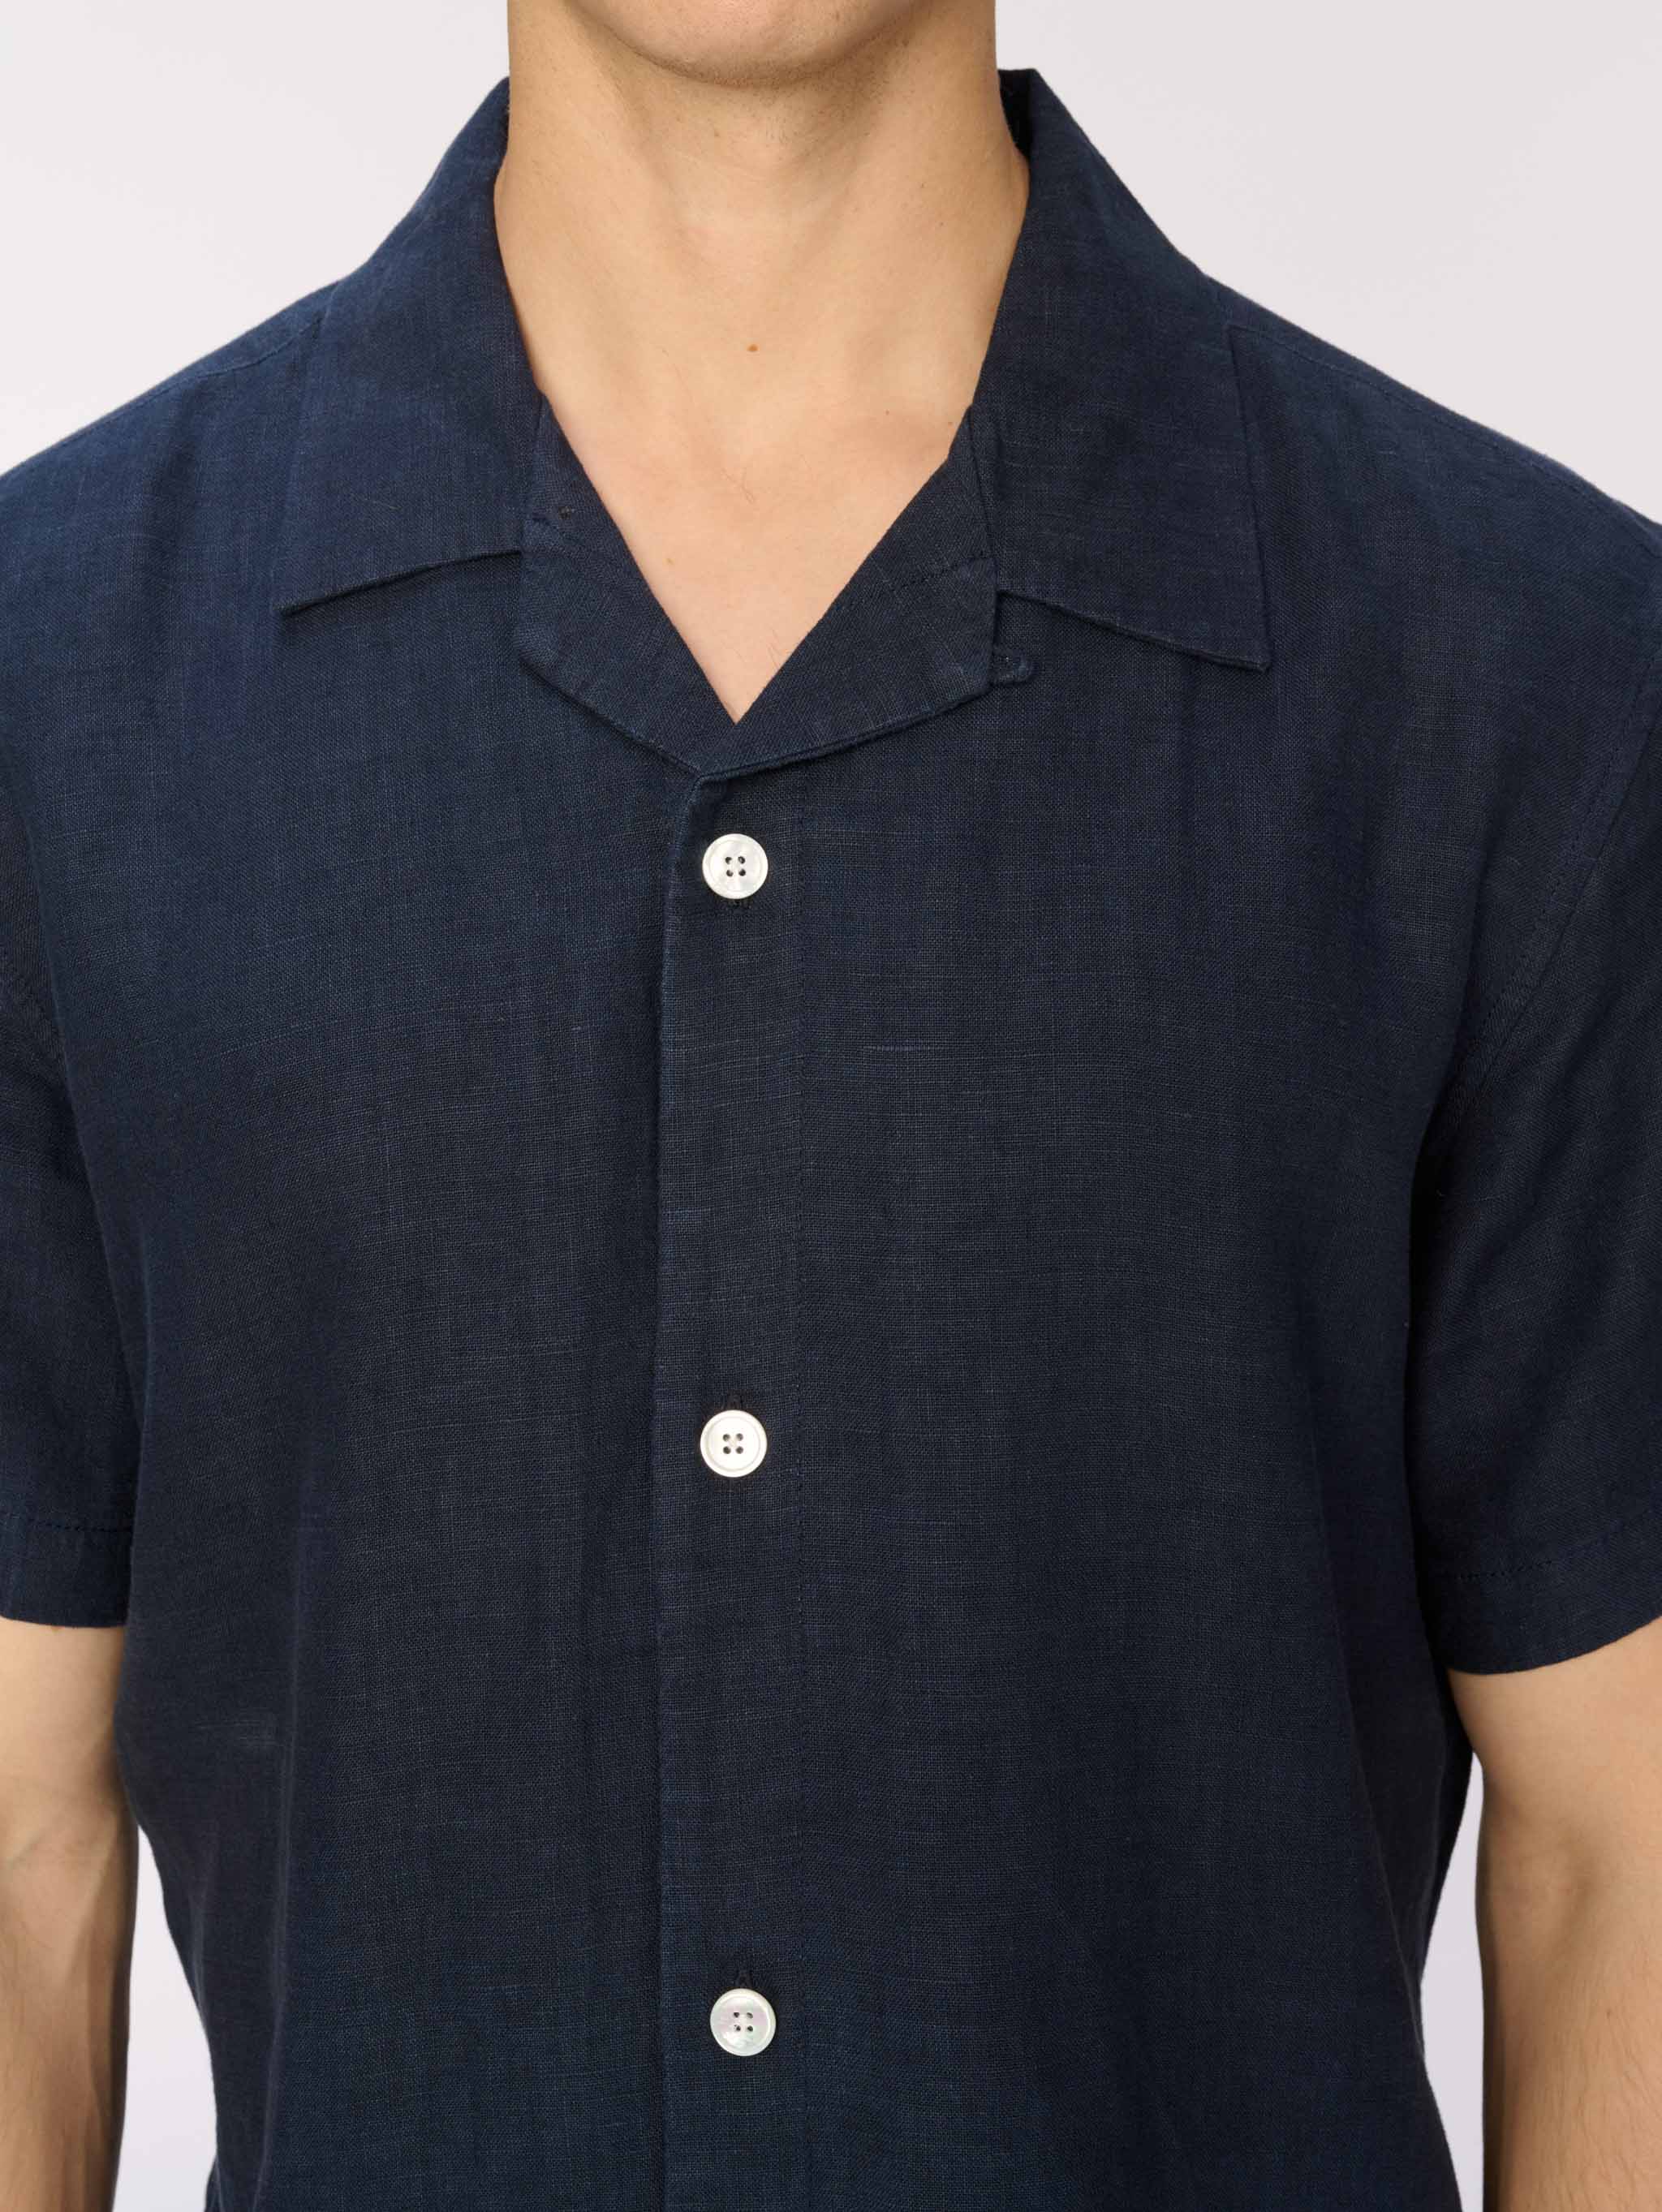 Hugh Shirt | Classic Navy Linen